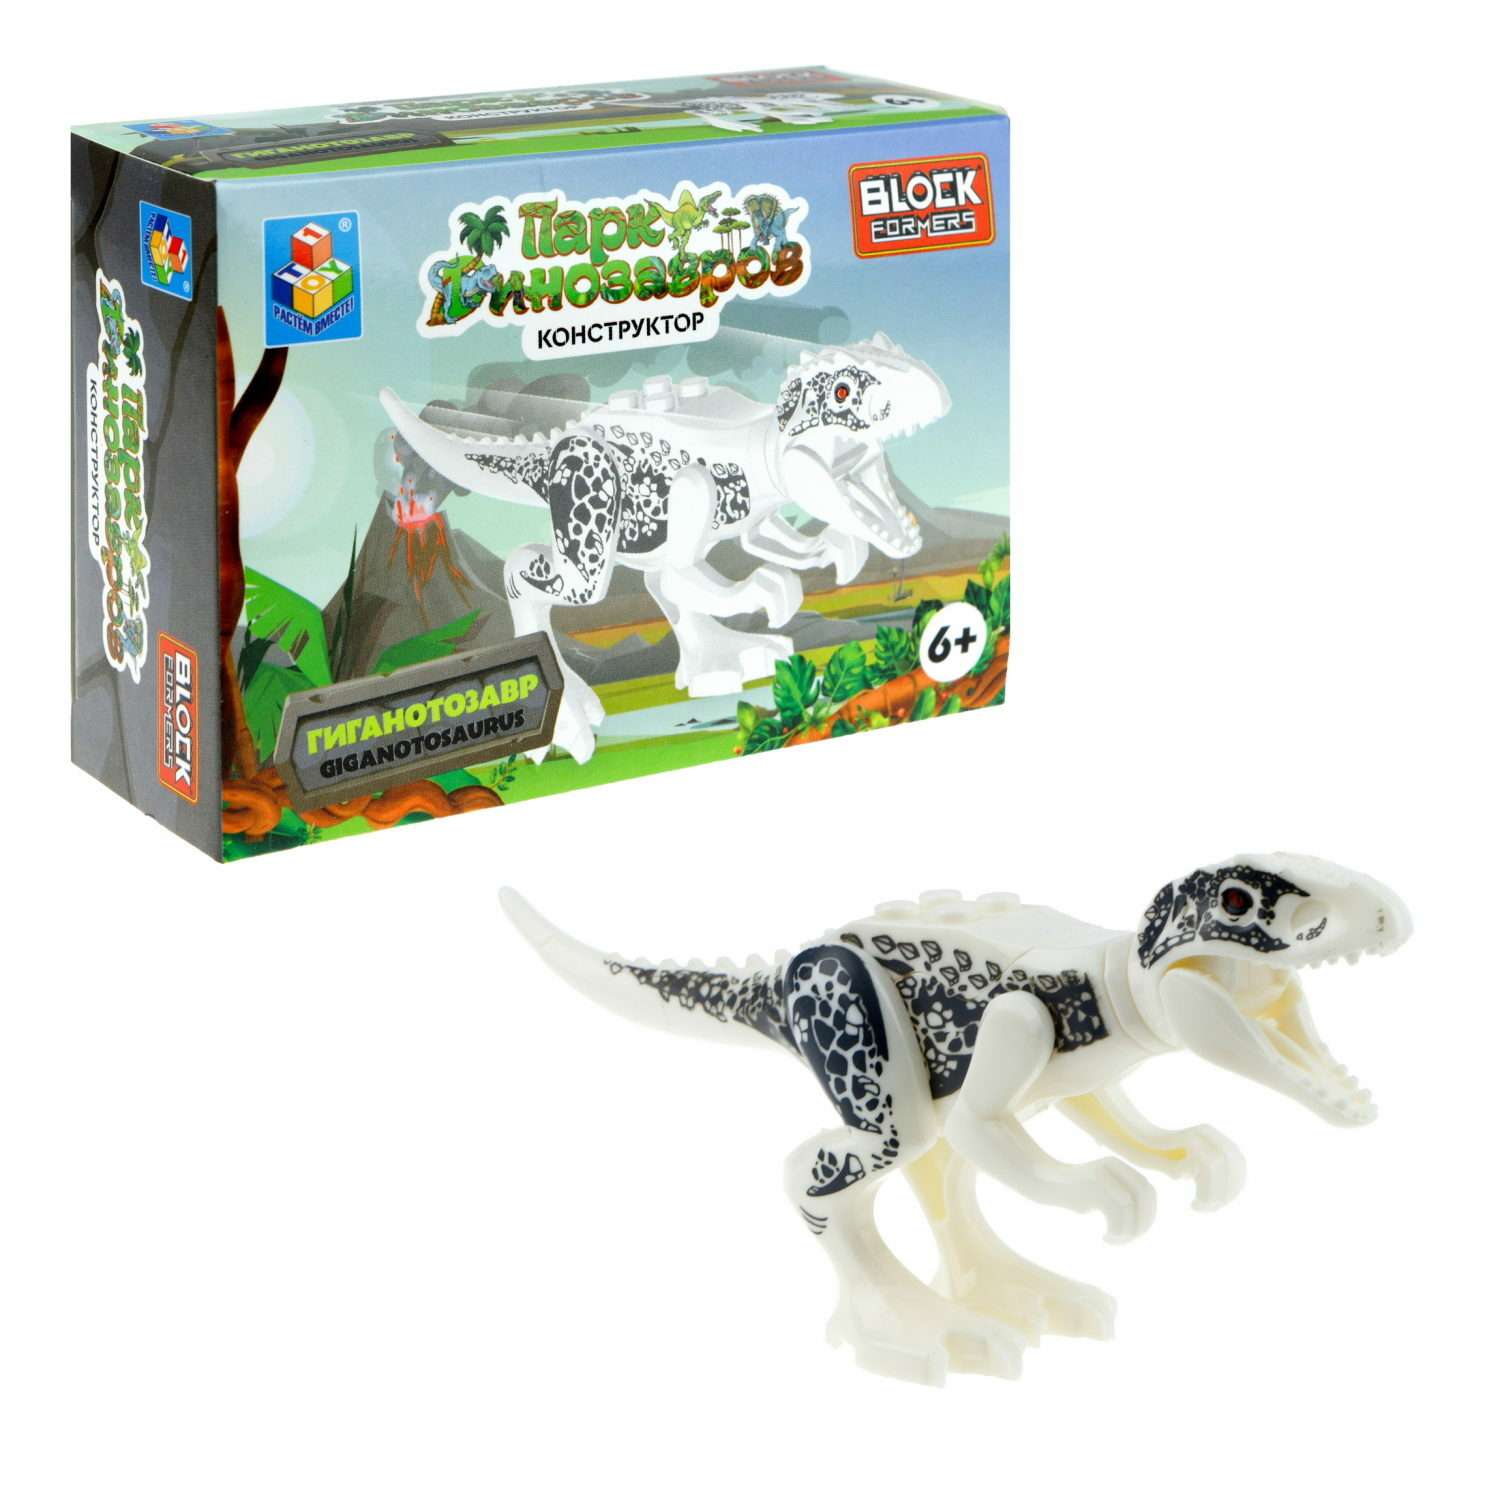 Игрушка сборная Blockformers 1Toy Парк динозавров Гиганотозавр Т23229-6 - фото 2